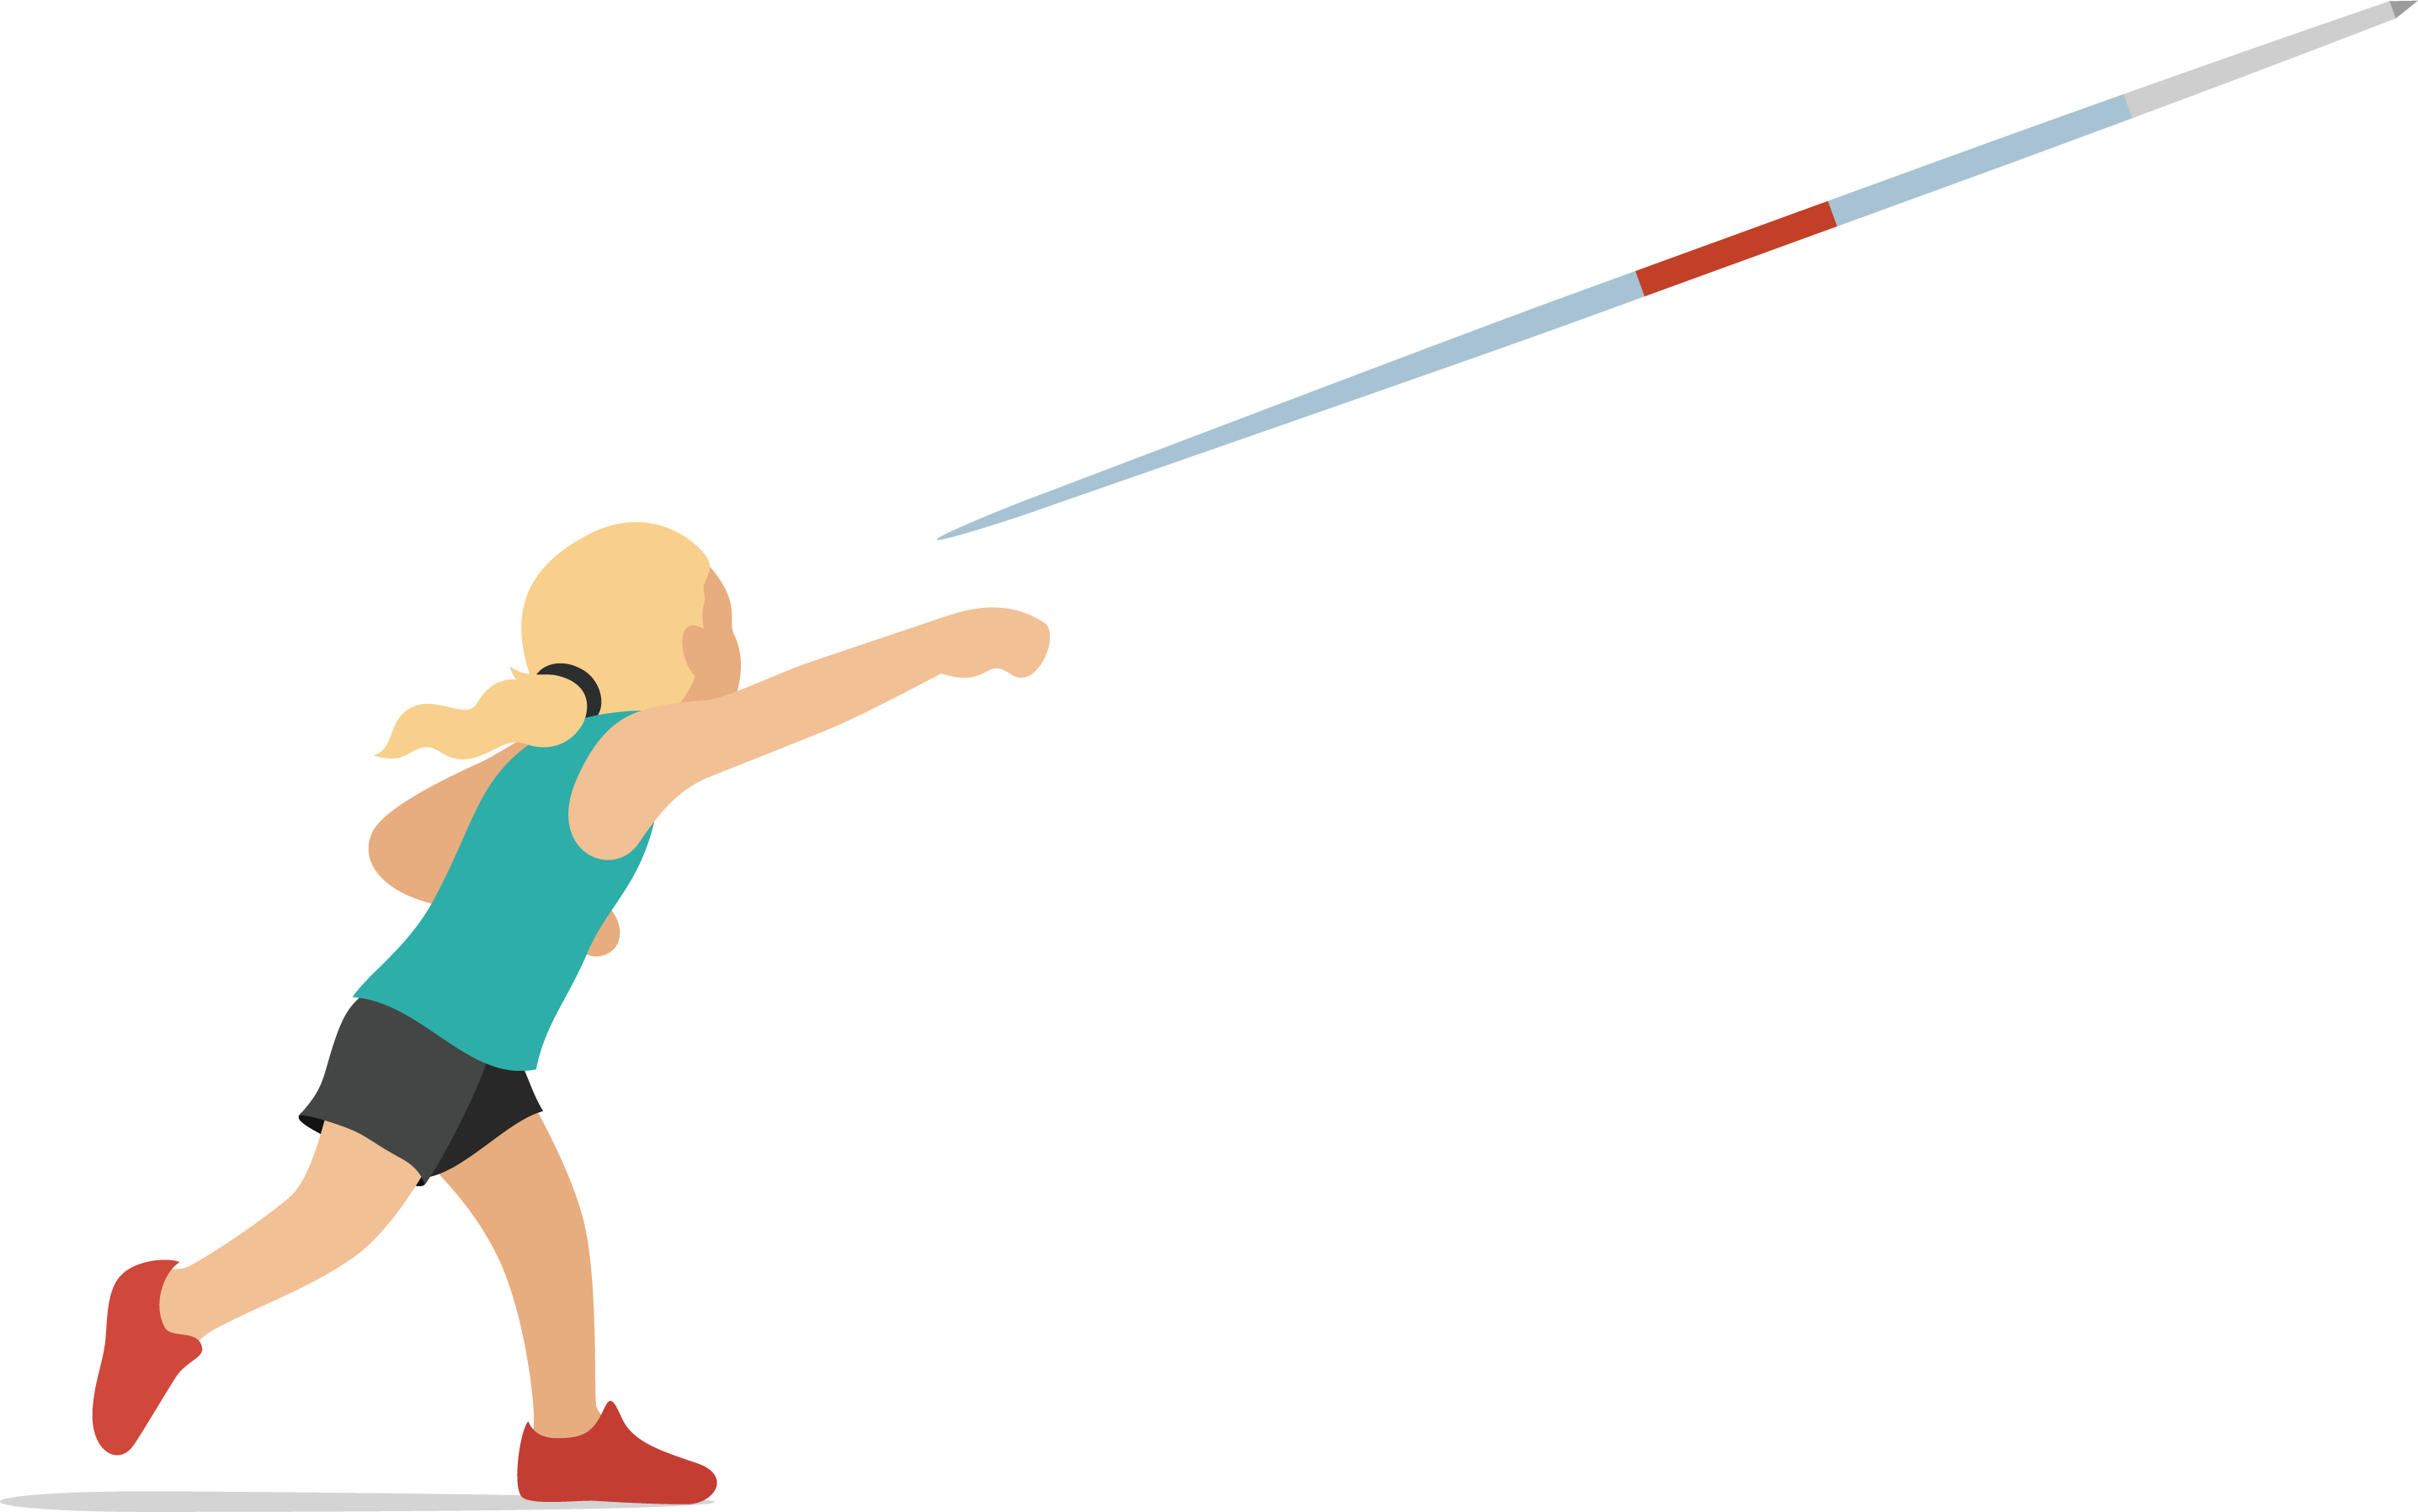 image of girl throwing javelin